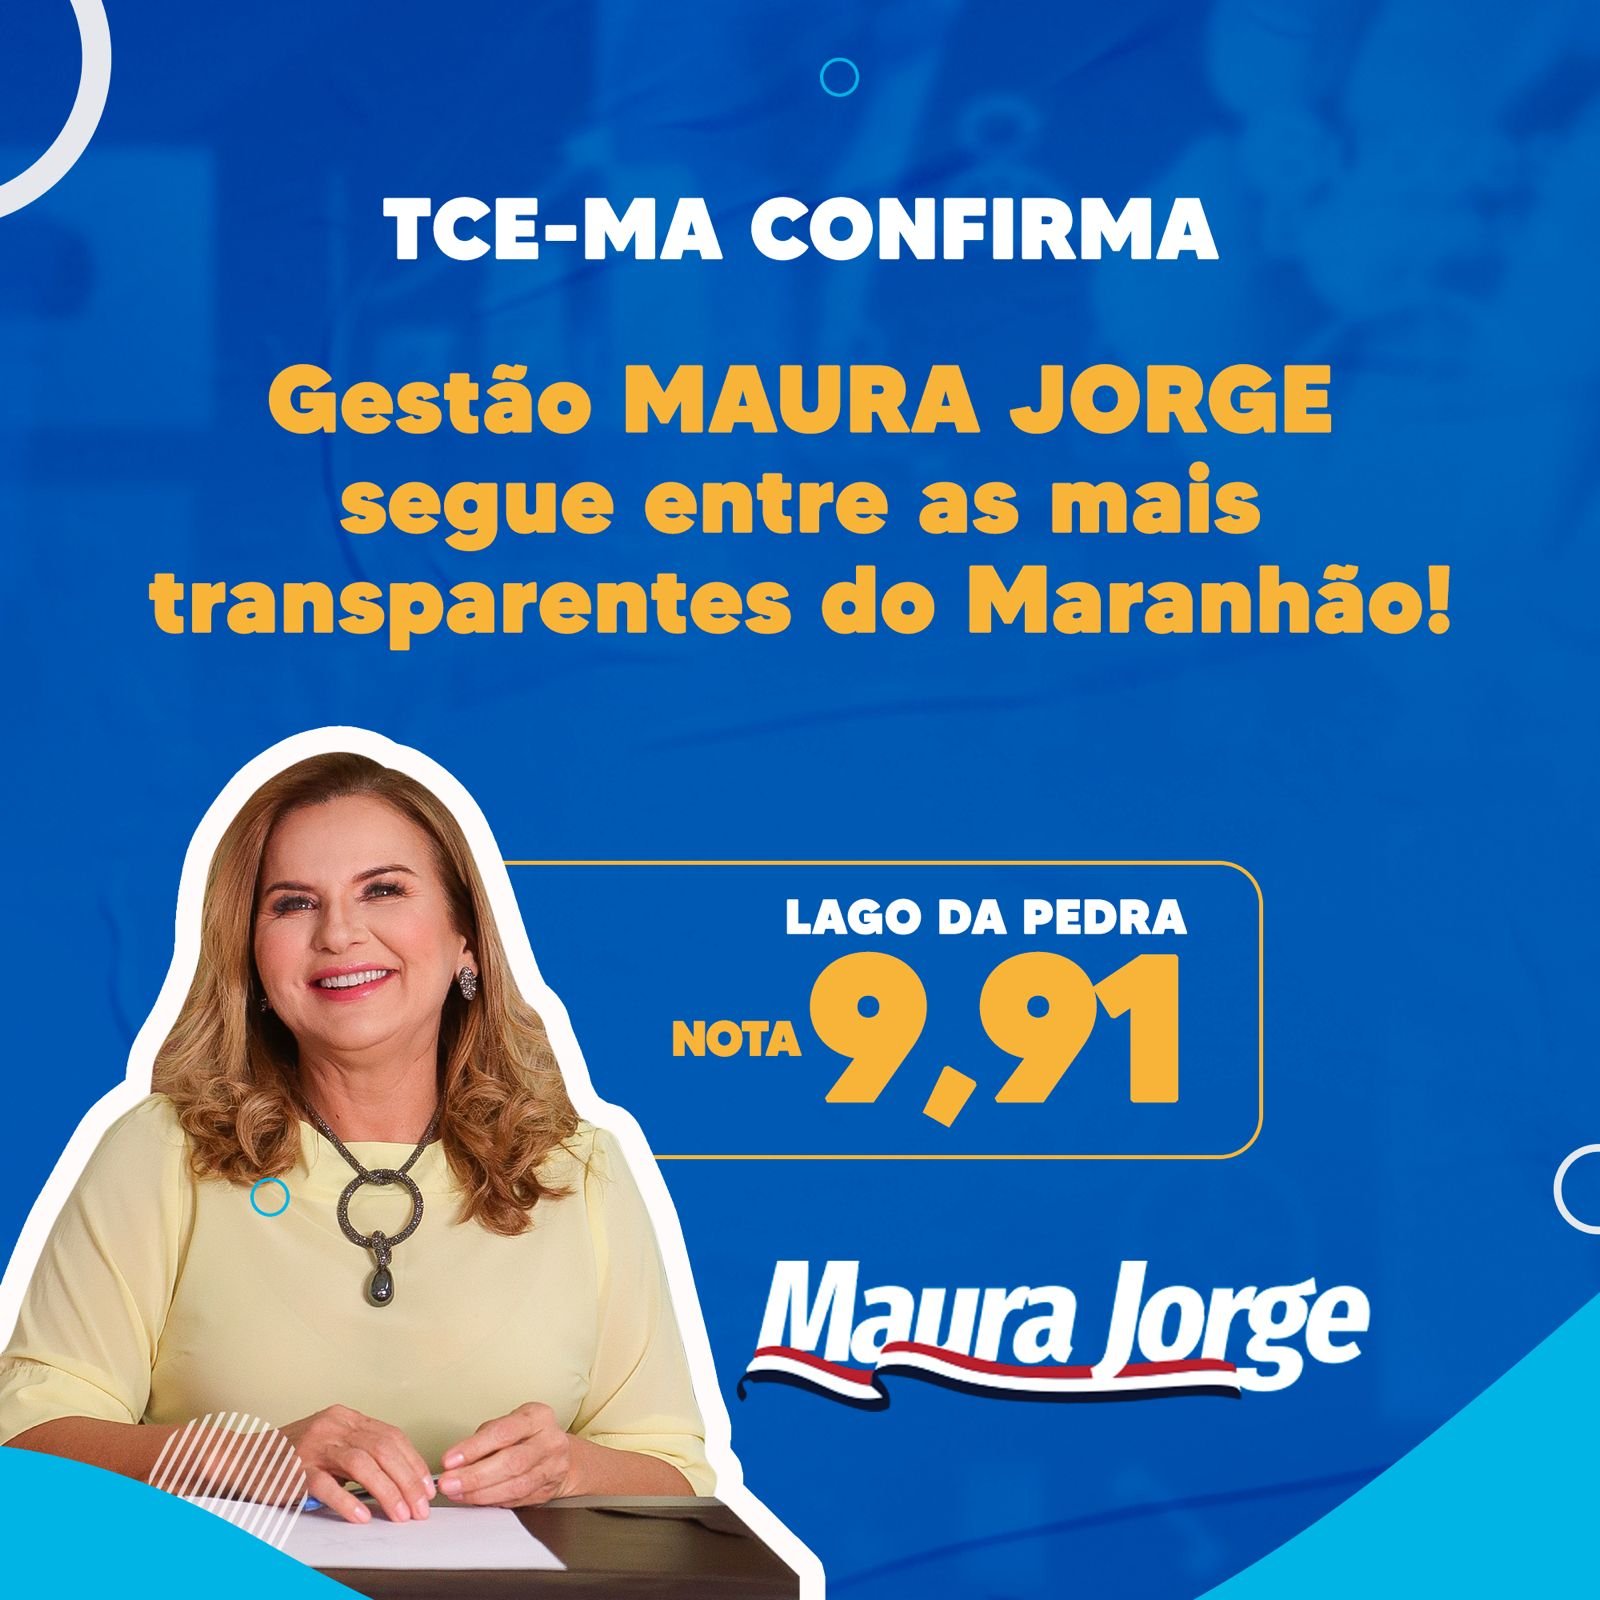 Gestão Maura Jorge continua entre as mais transparentes do Maranhão